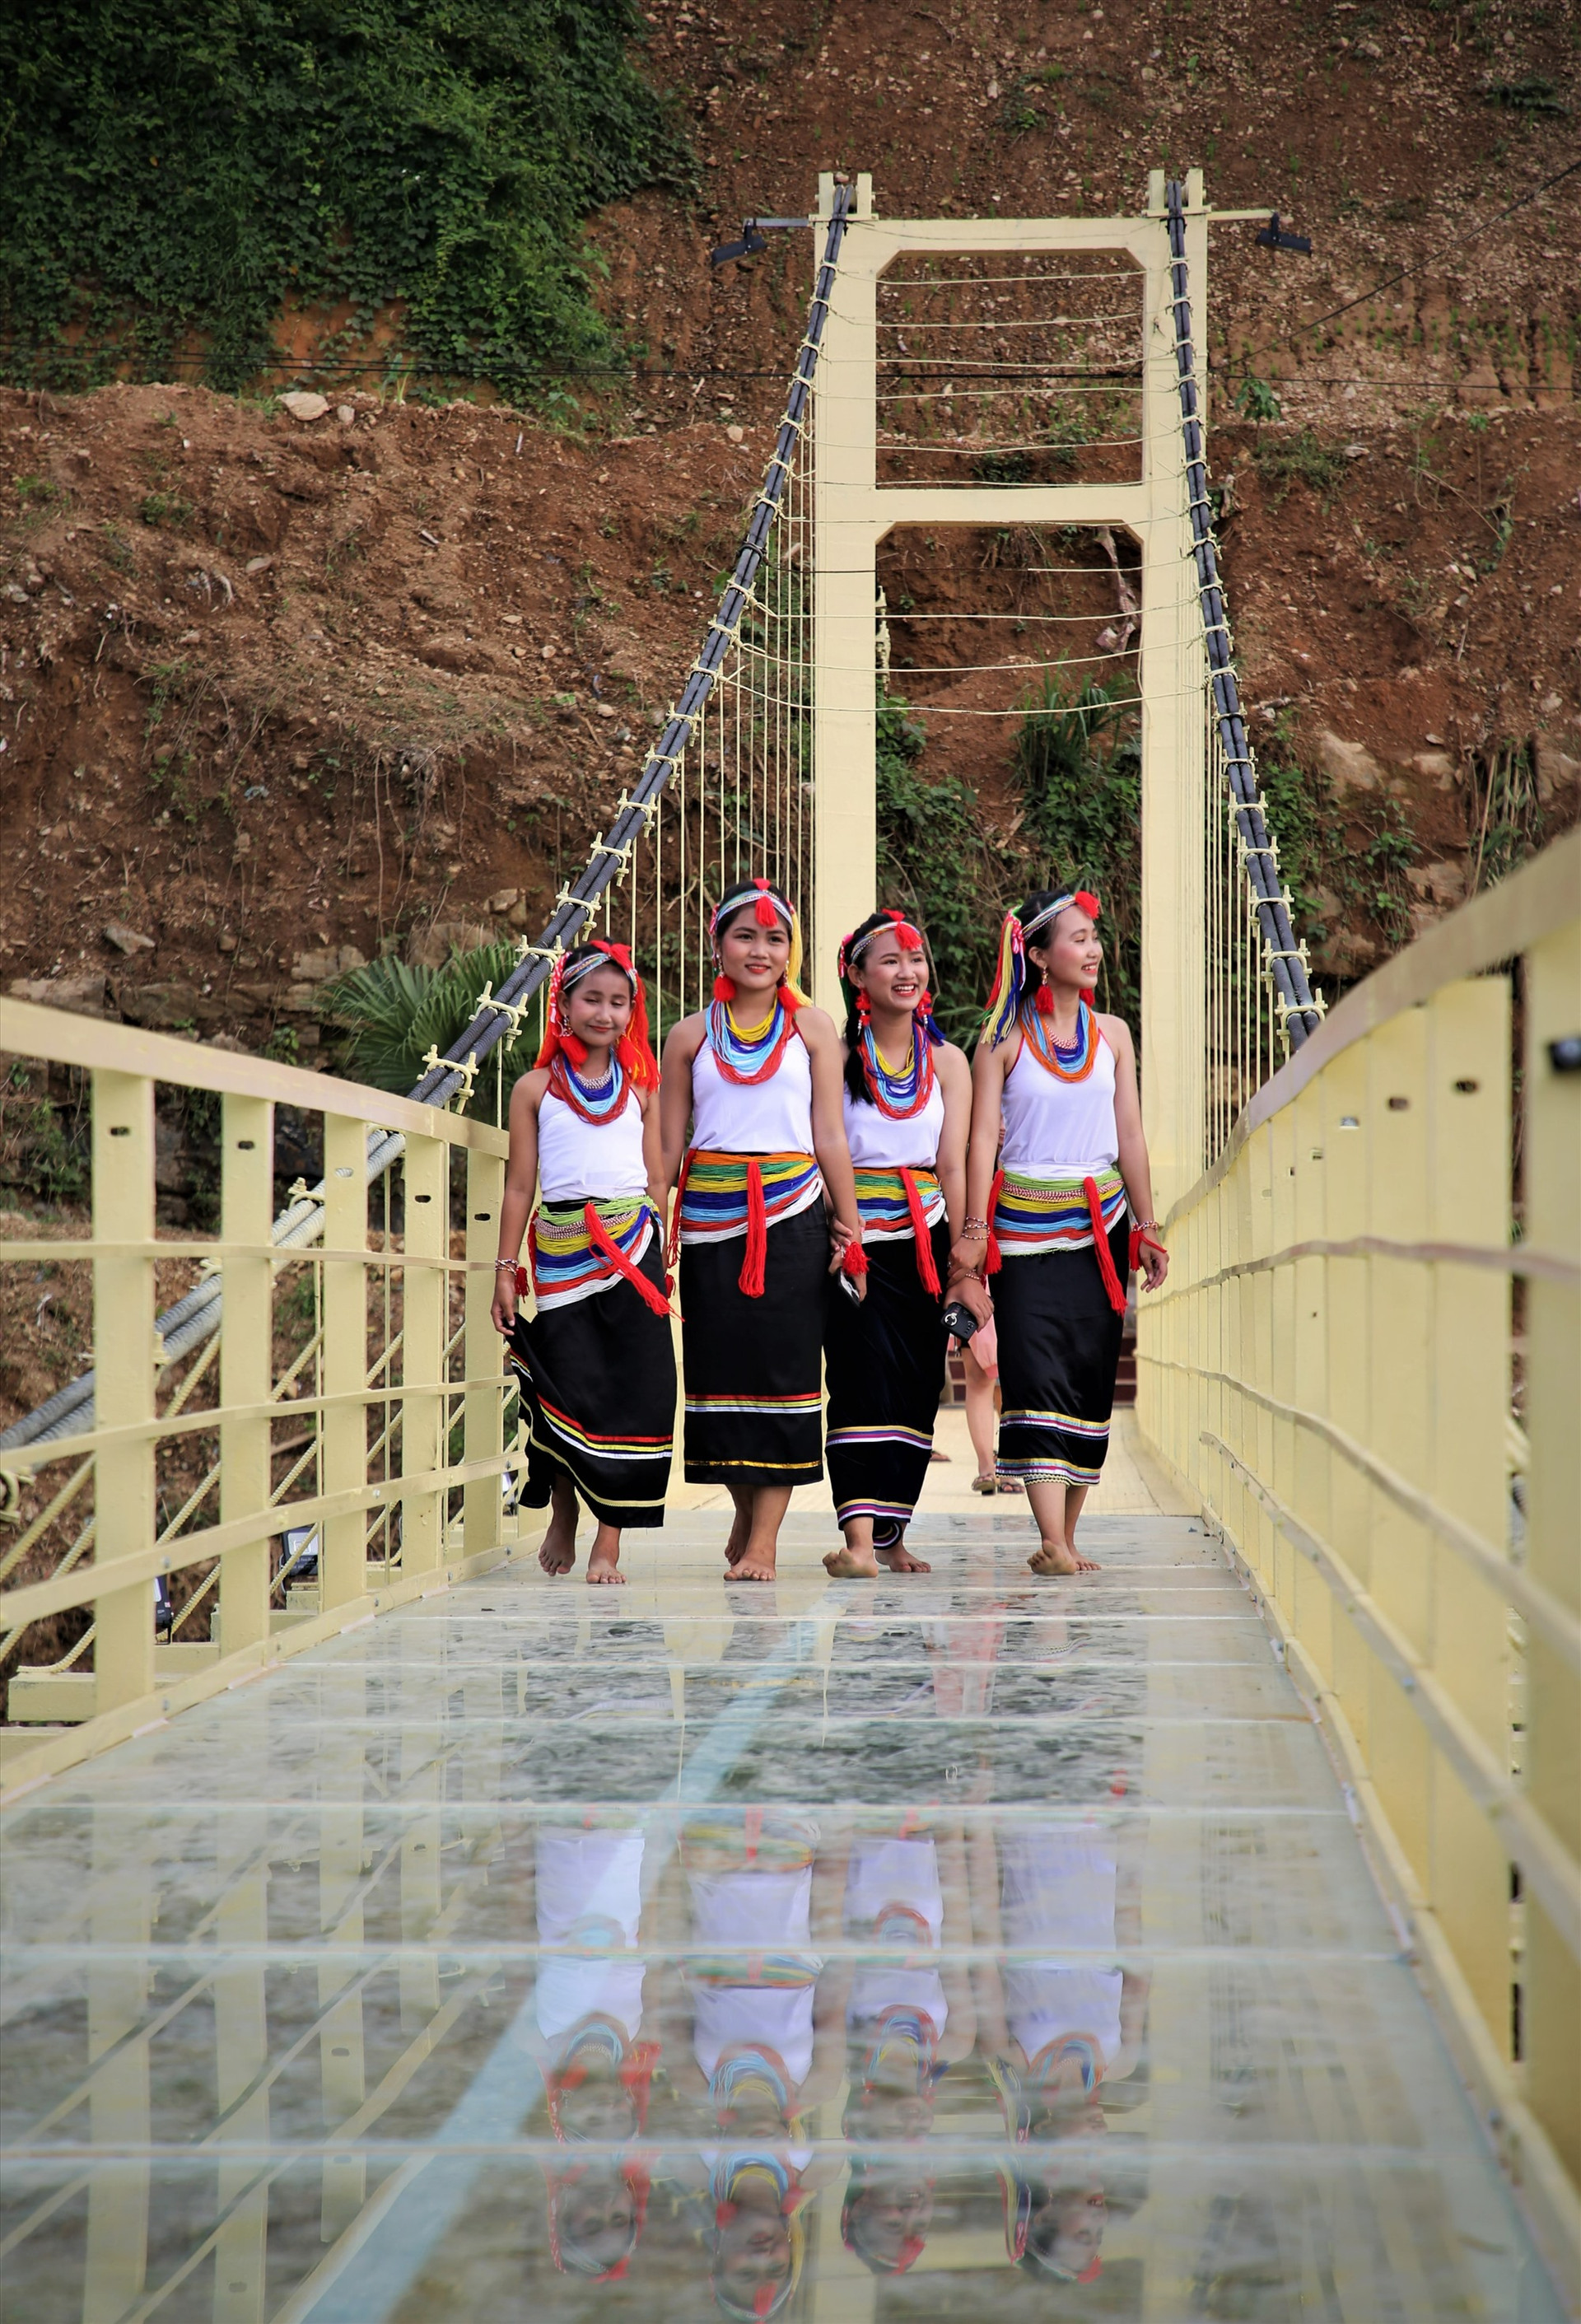 Cầu treo kính nối hai bờ sông Trường được xem là điểm nhấn, thu hút các cô gái vùng cao tìm đến ghi lại khoảnh khắc. Ảnh: A.N